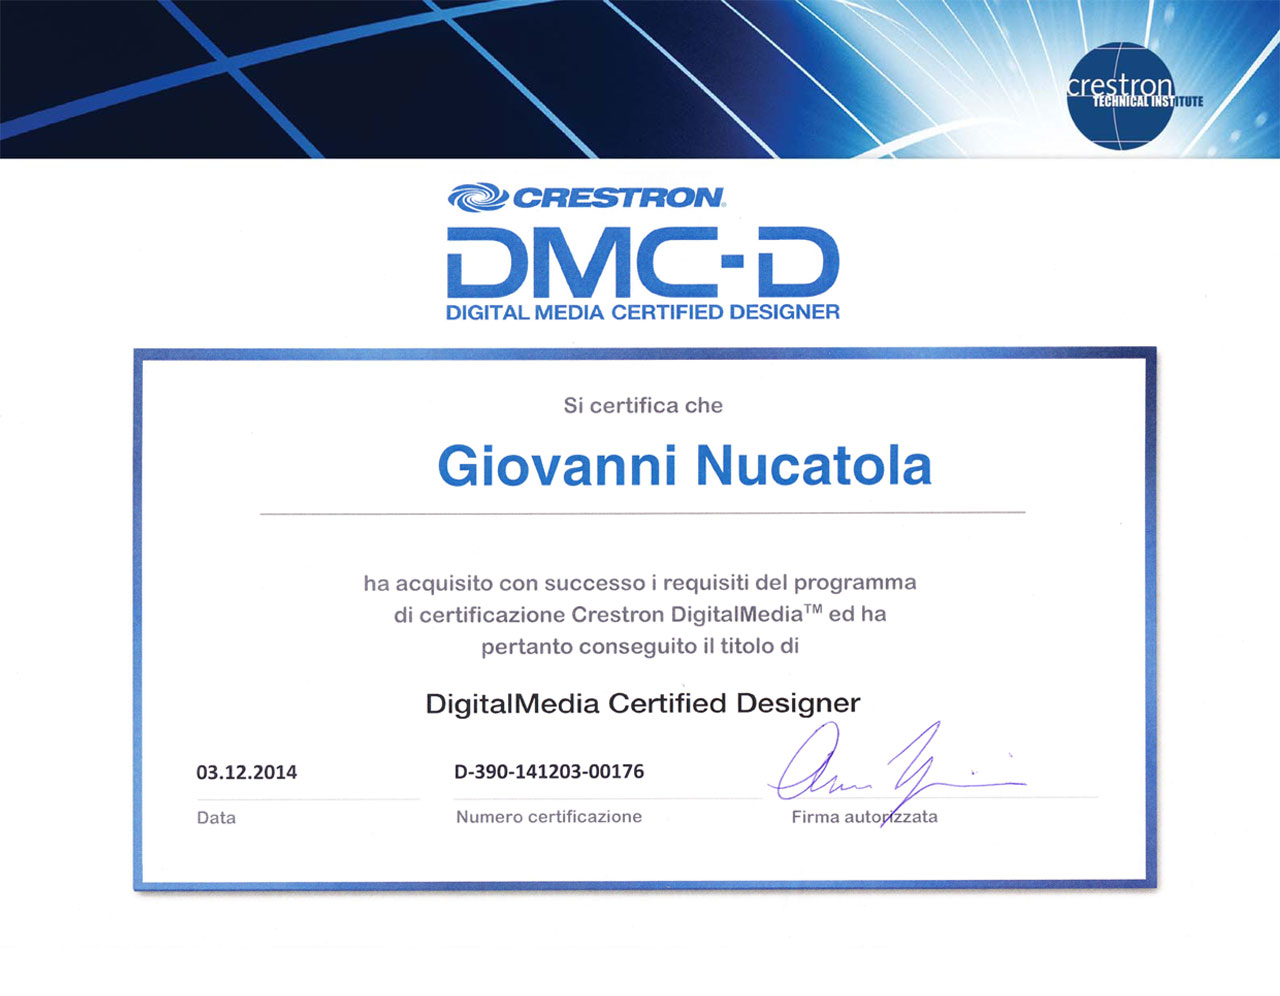 Giovanni Nucatola, G2M Sistemi, DMC-D Crestron certified